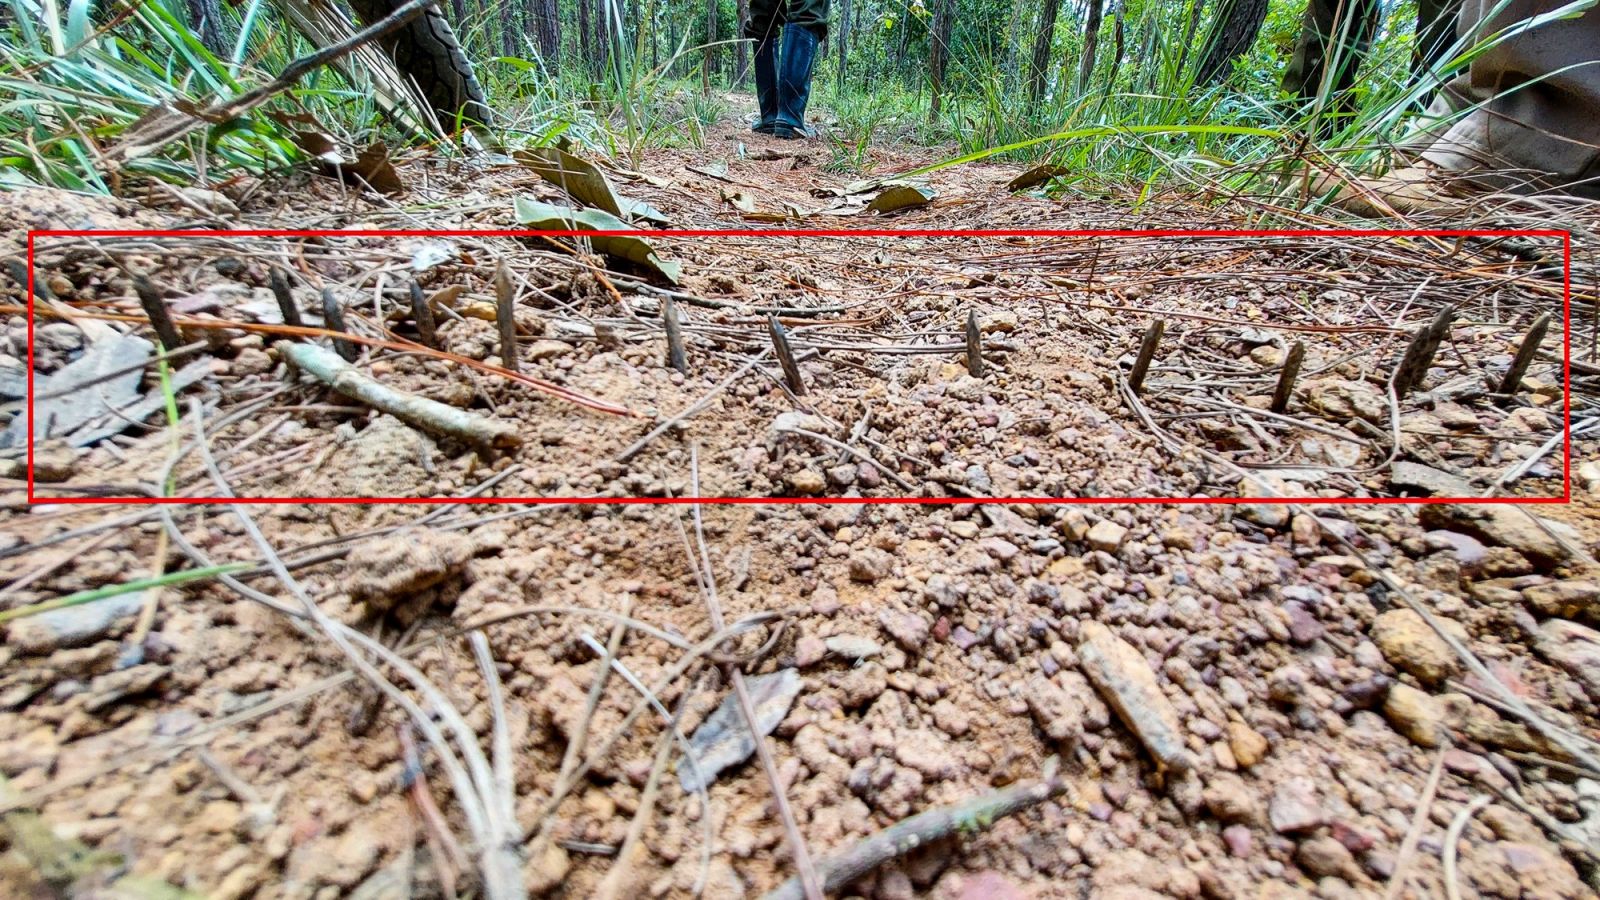 Lâm Đồng: Điều tra vụ cán bộ bảo vệ rừng bị đạn chì bắn vào lưng